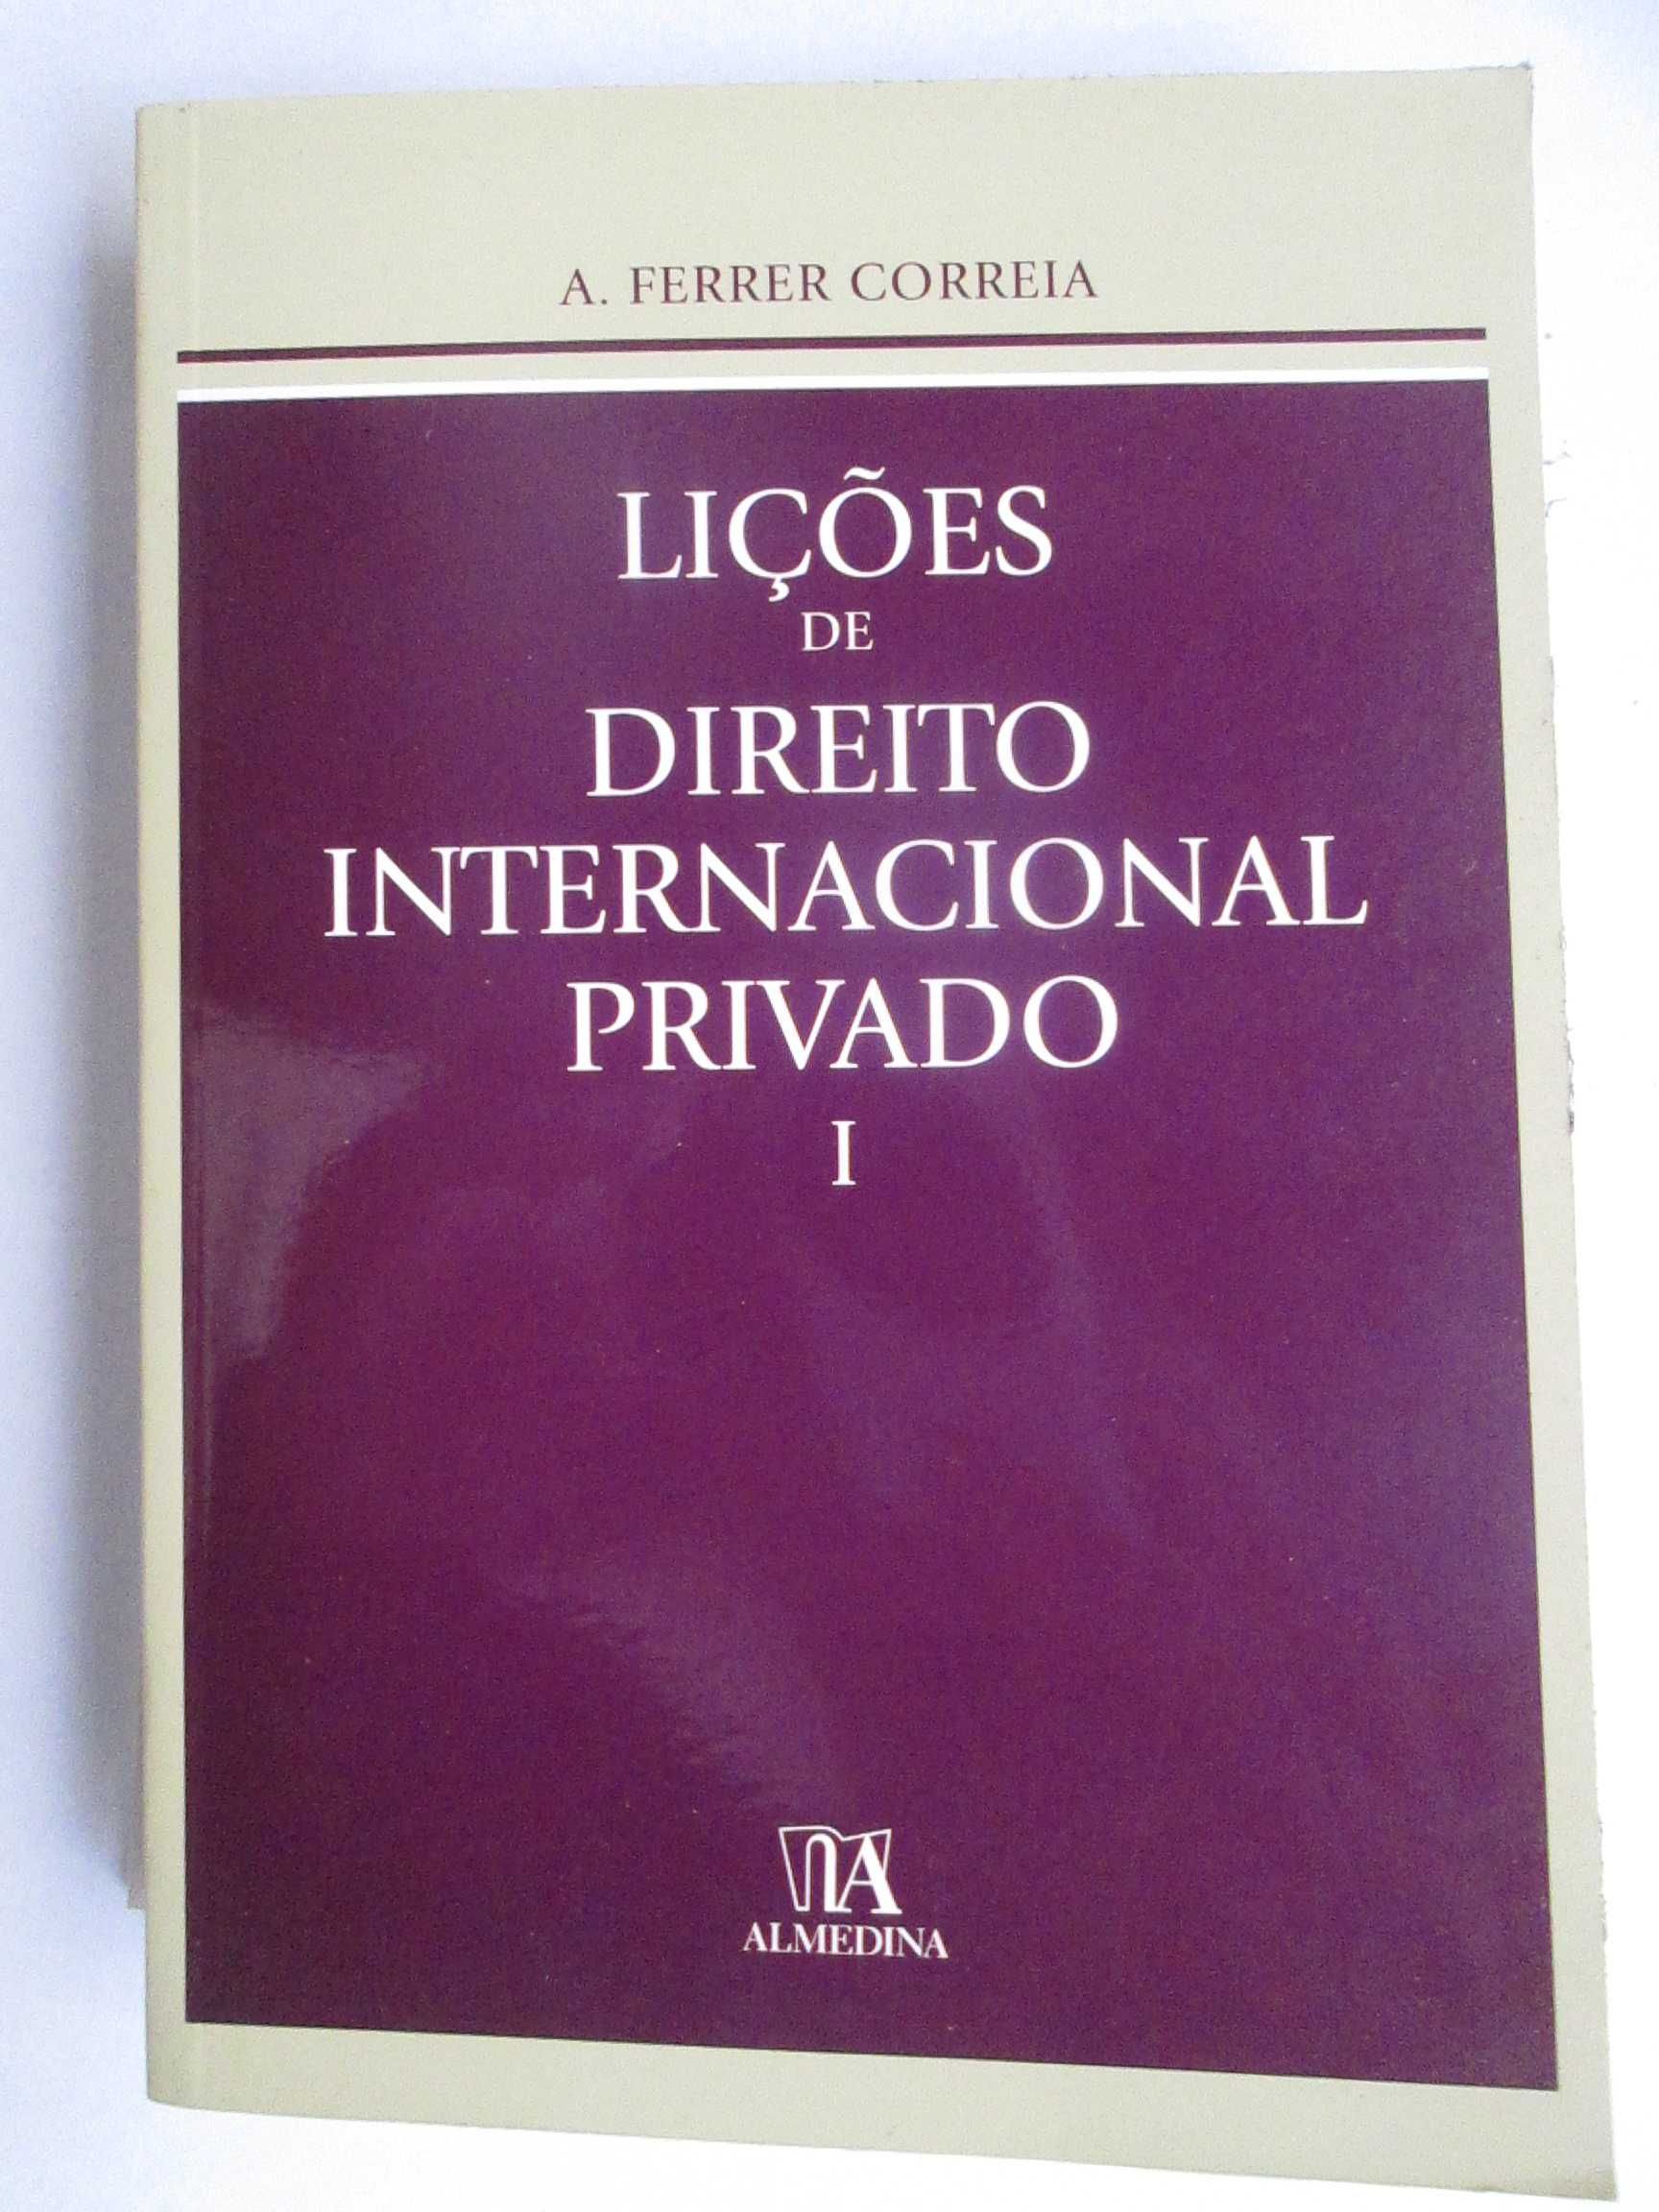 Lições de Direito Internacional Privado, de A. Ferrer Correia